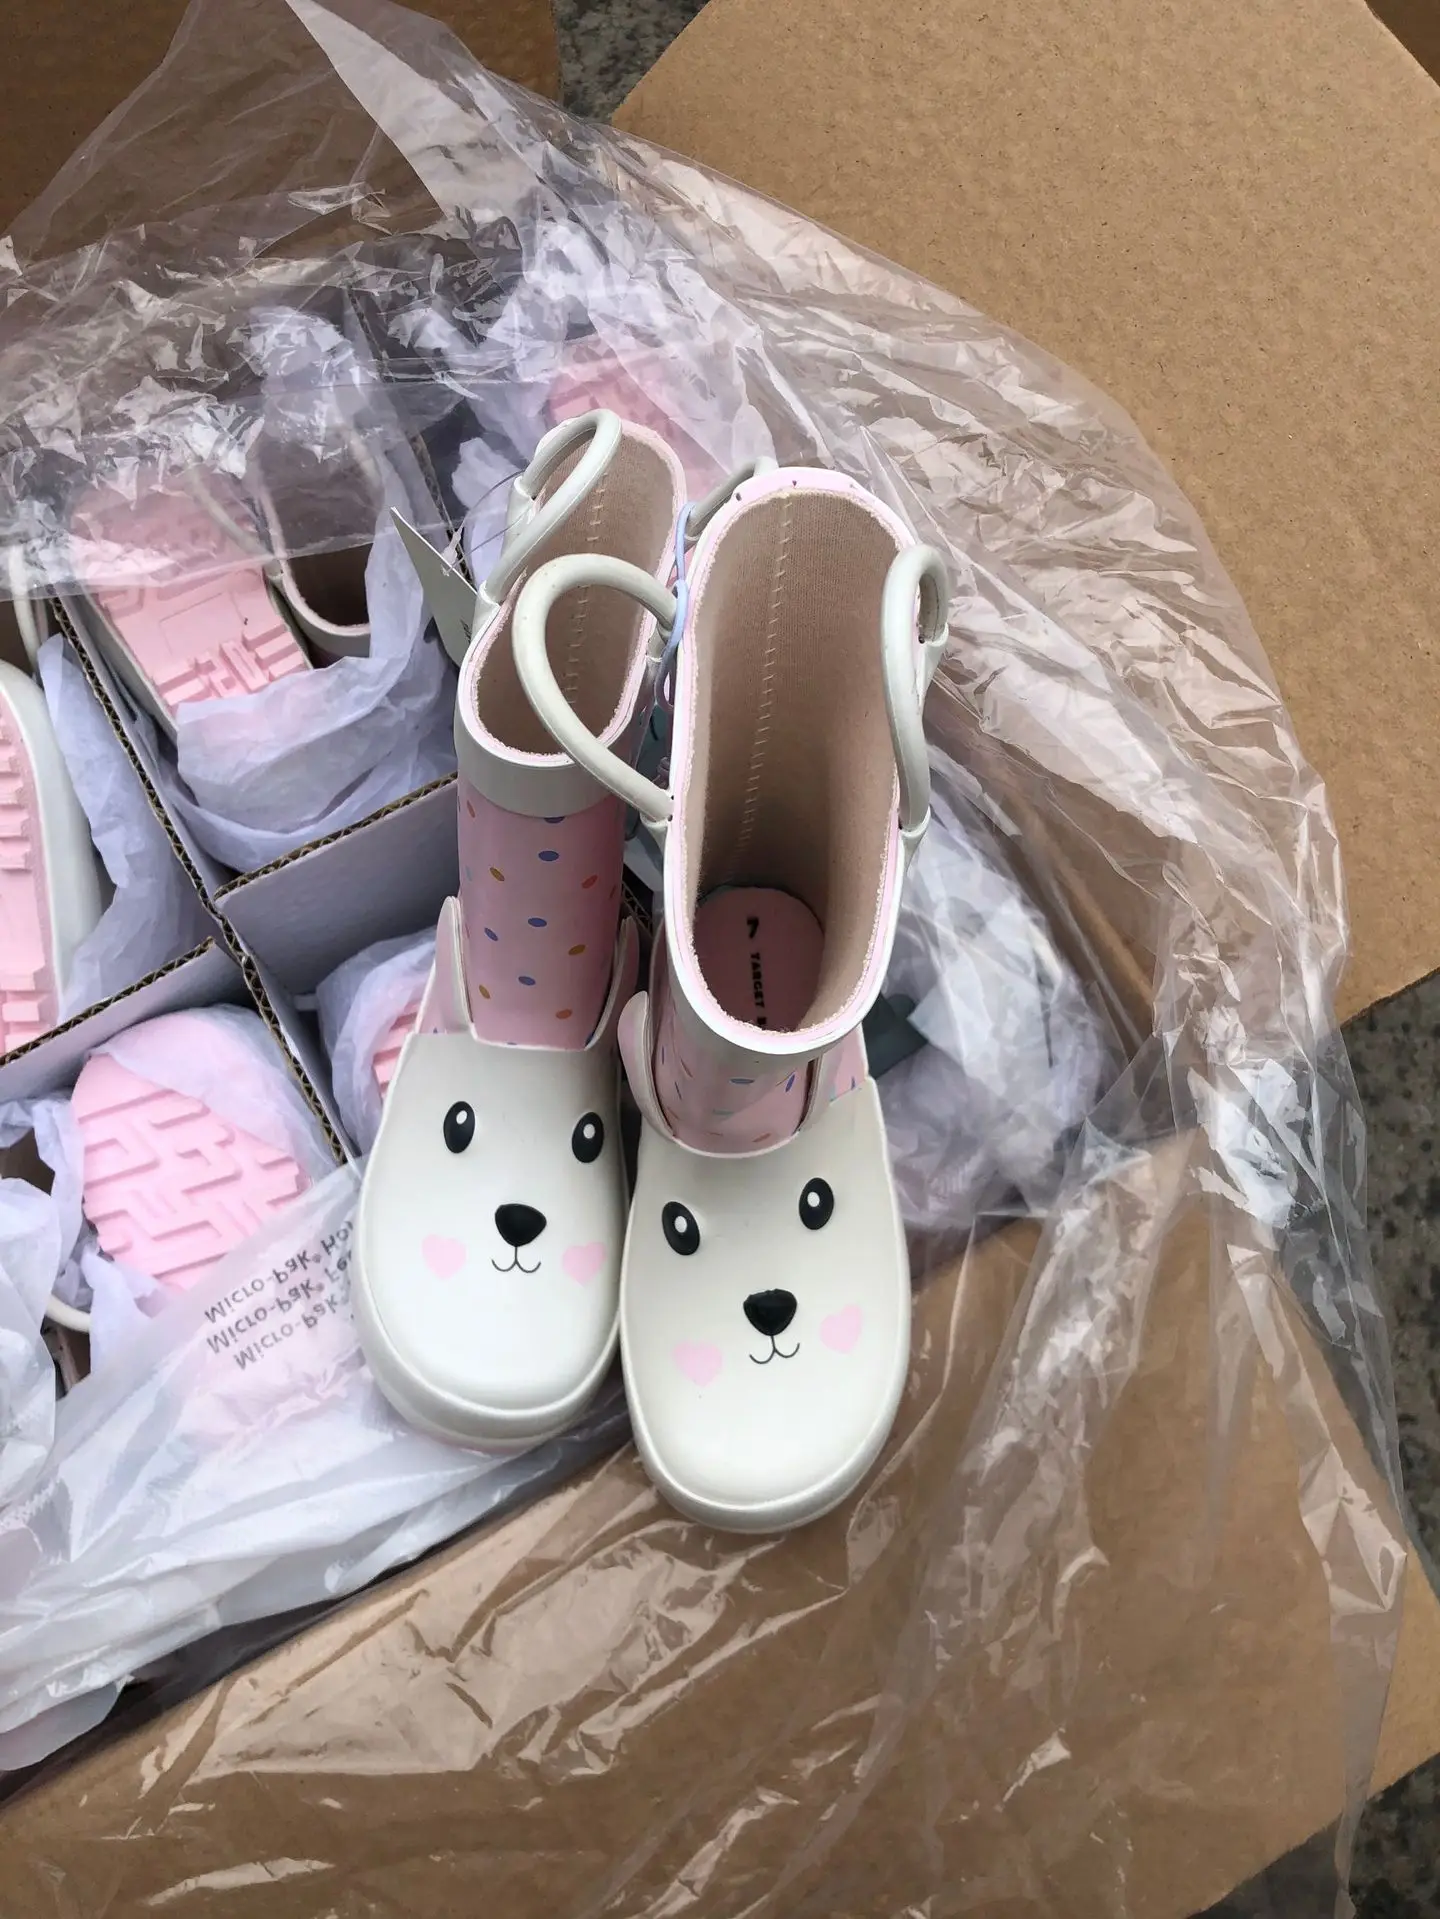 Cute Toddler shoe pink love rabbit sandals shoes  CuteKids infant shoe 